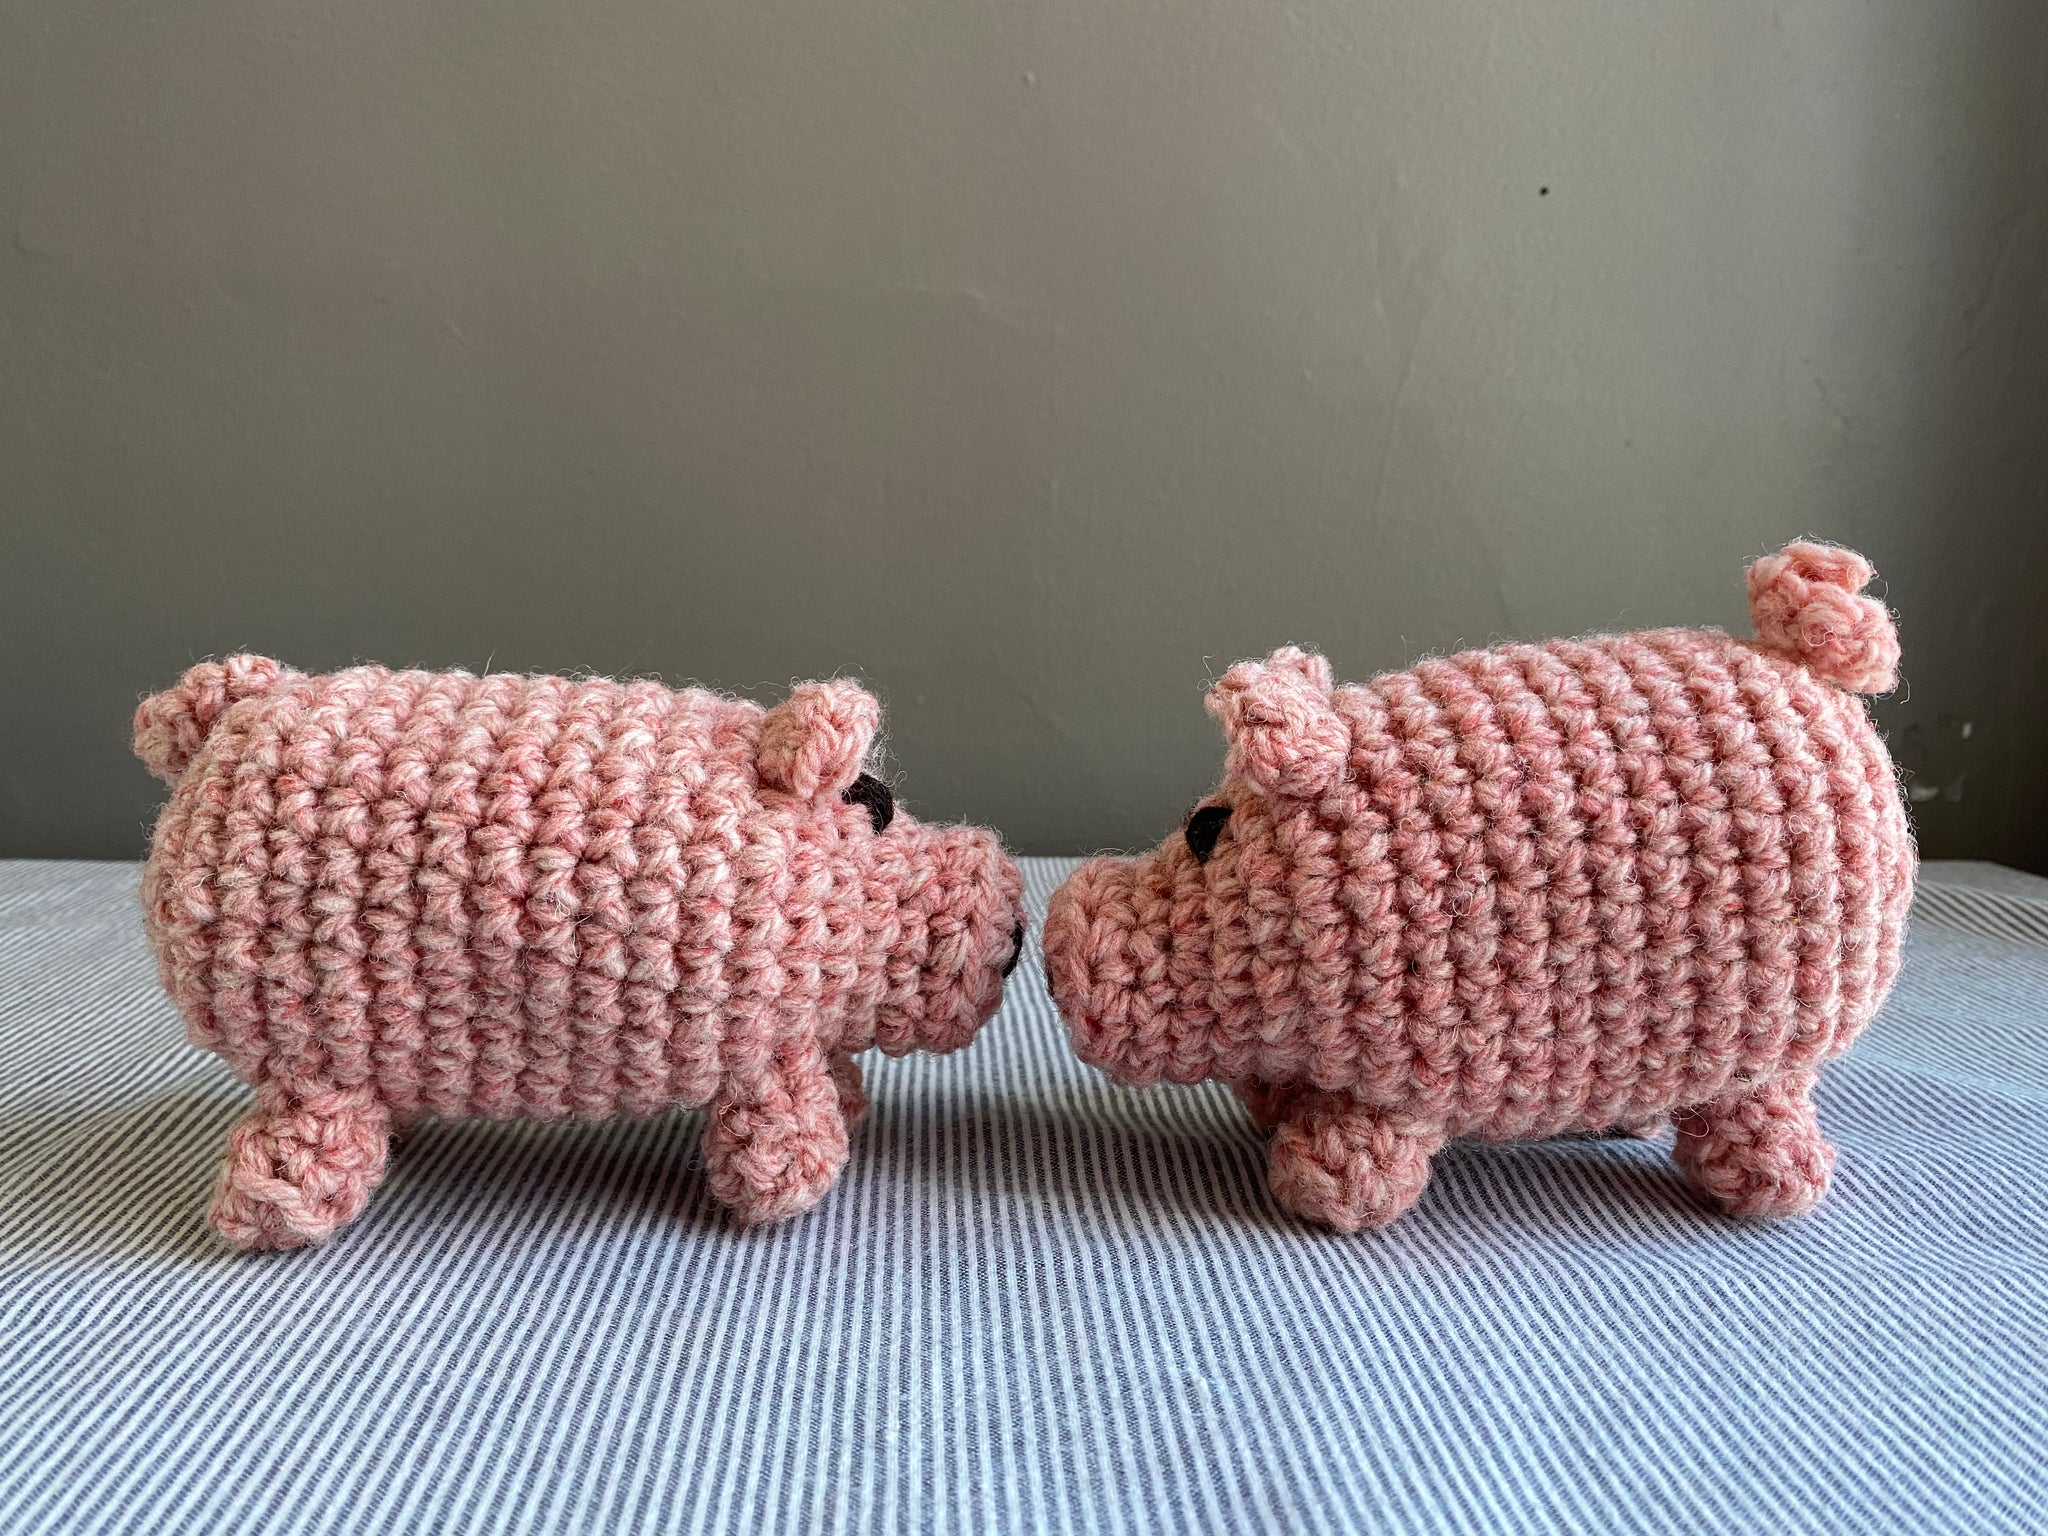 Canadian Wool Piglet Crochet Kit